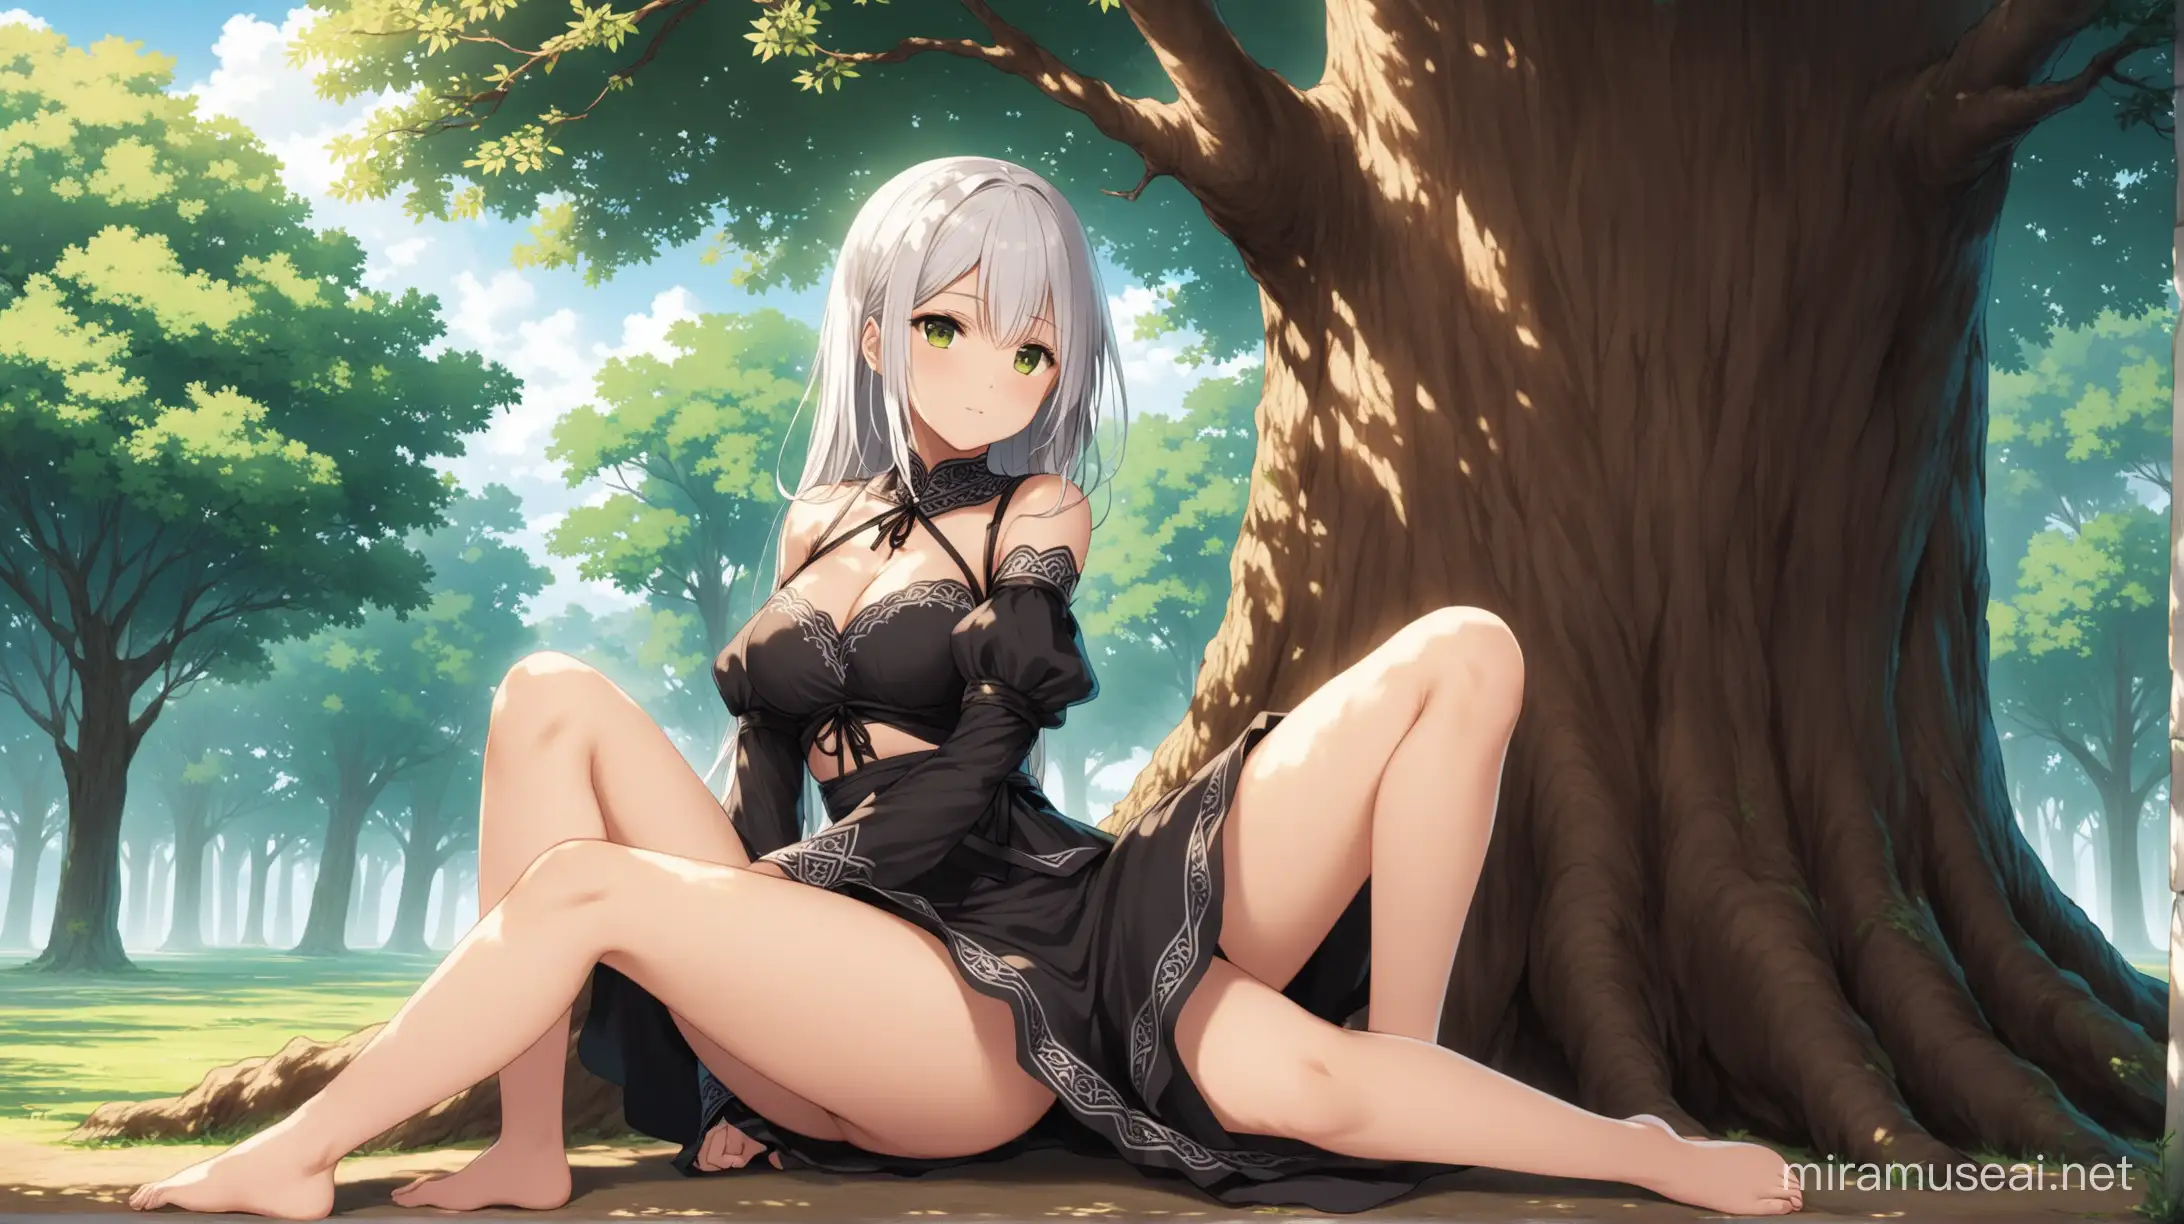 Ecchi Girl Relaxing Under Ancient Tree Serene Anime Art